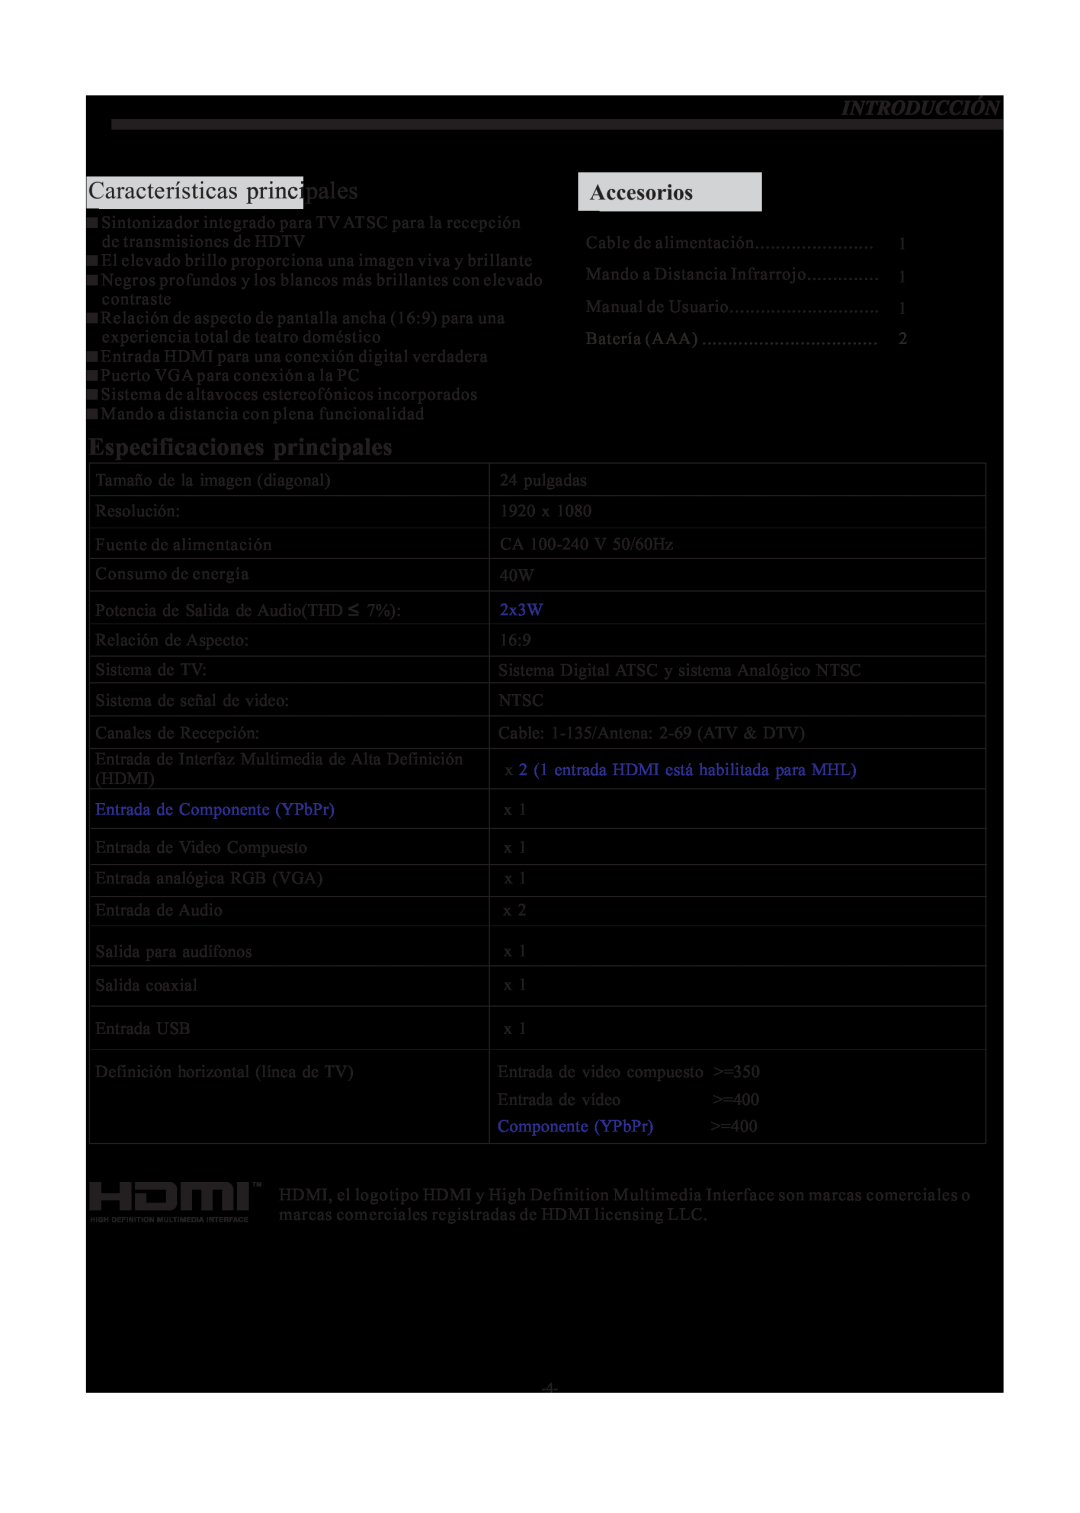 Haier LE24H3380 manual Características principales, Especificaciones principales, Accesorios 